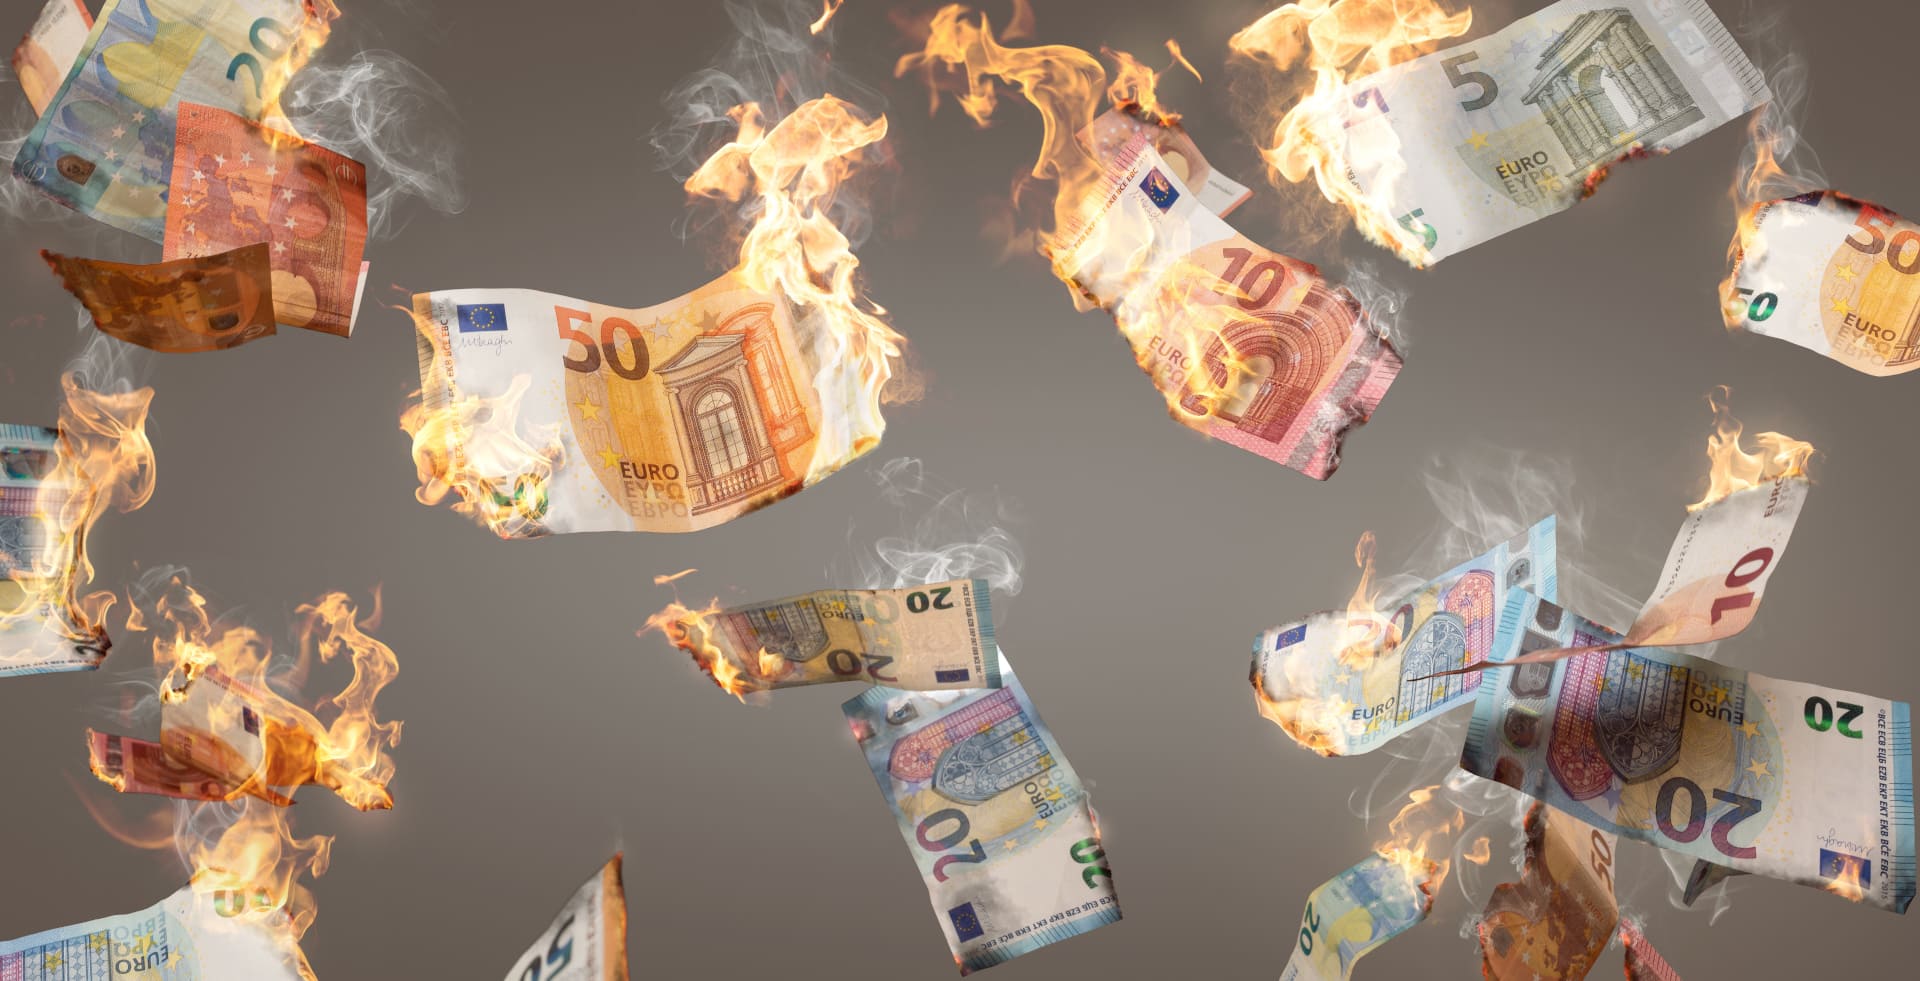 Various burning euro notes fall down